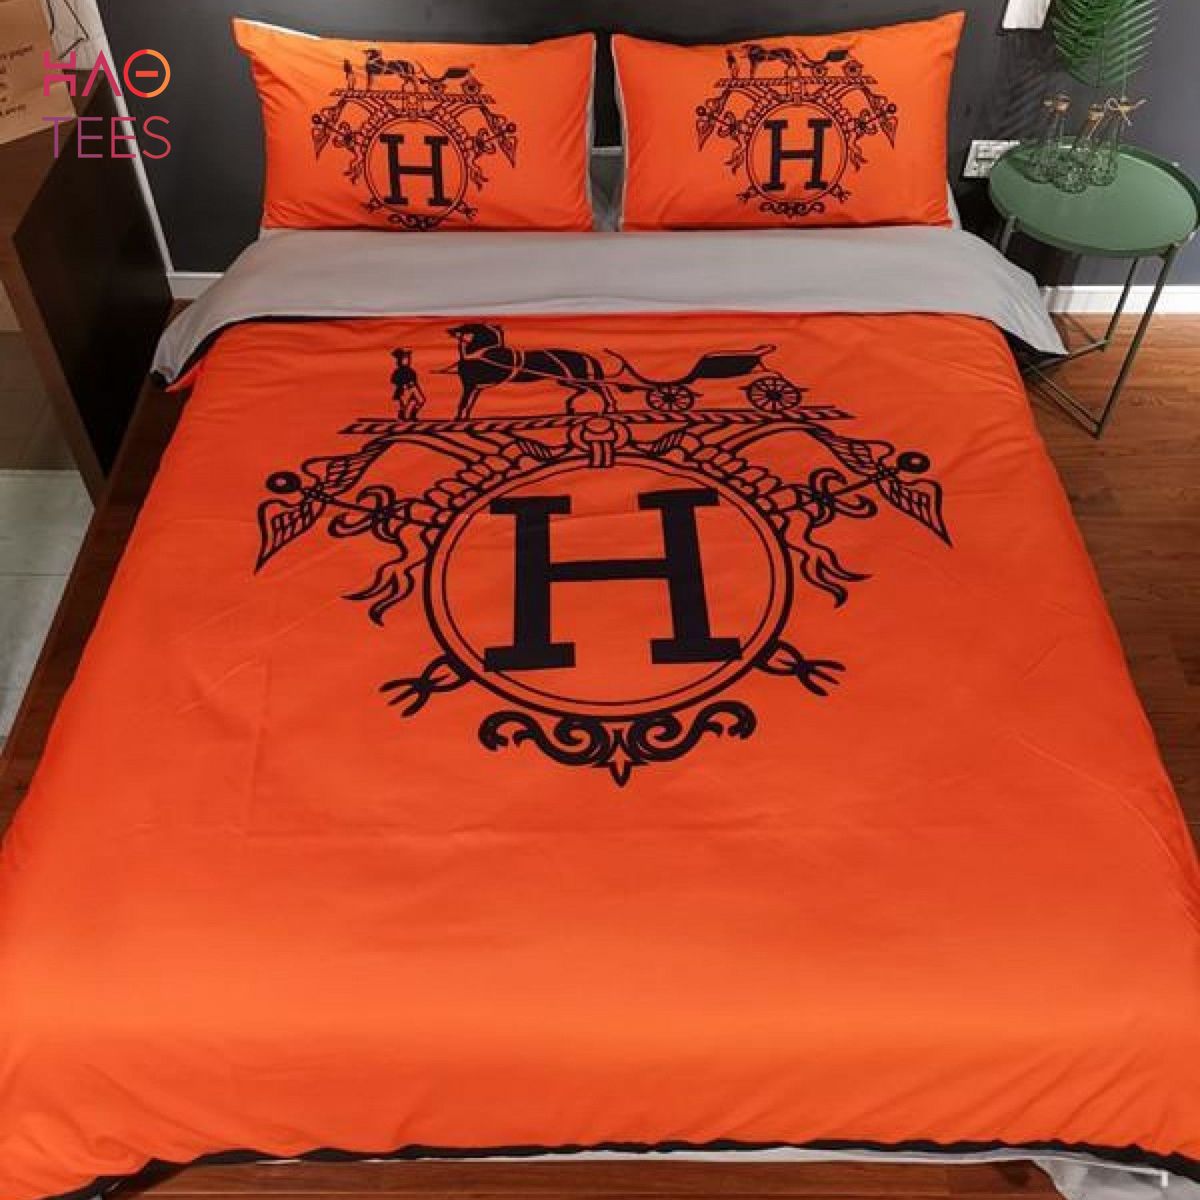 NEW Hermes Designer Cotton set Duvet Cover Bedding Set